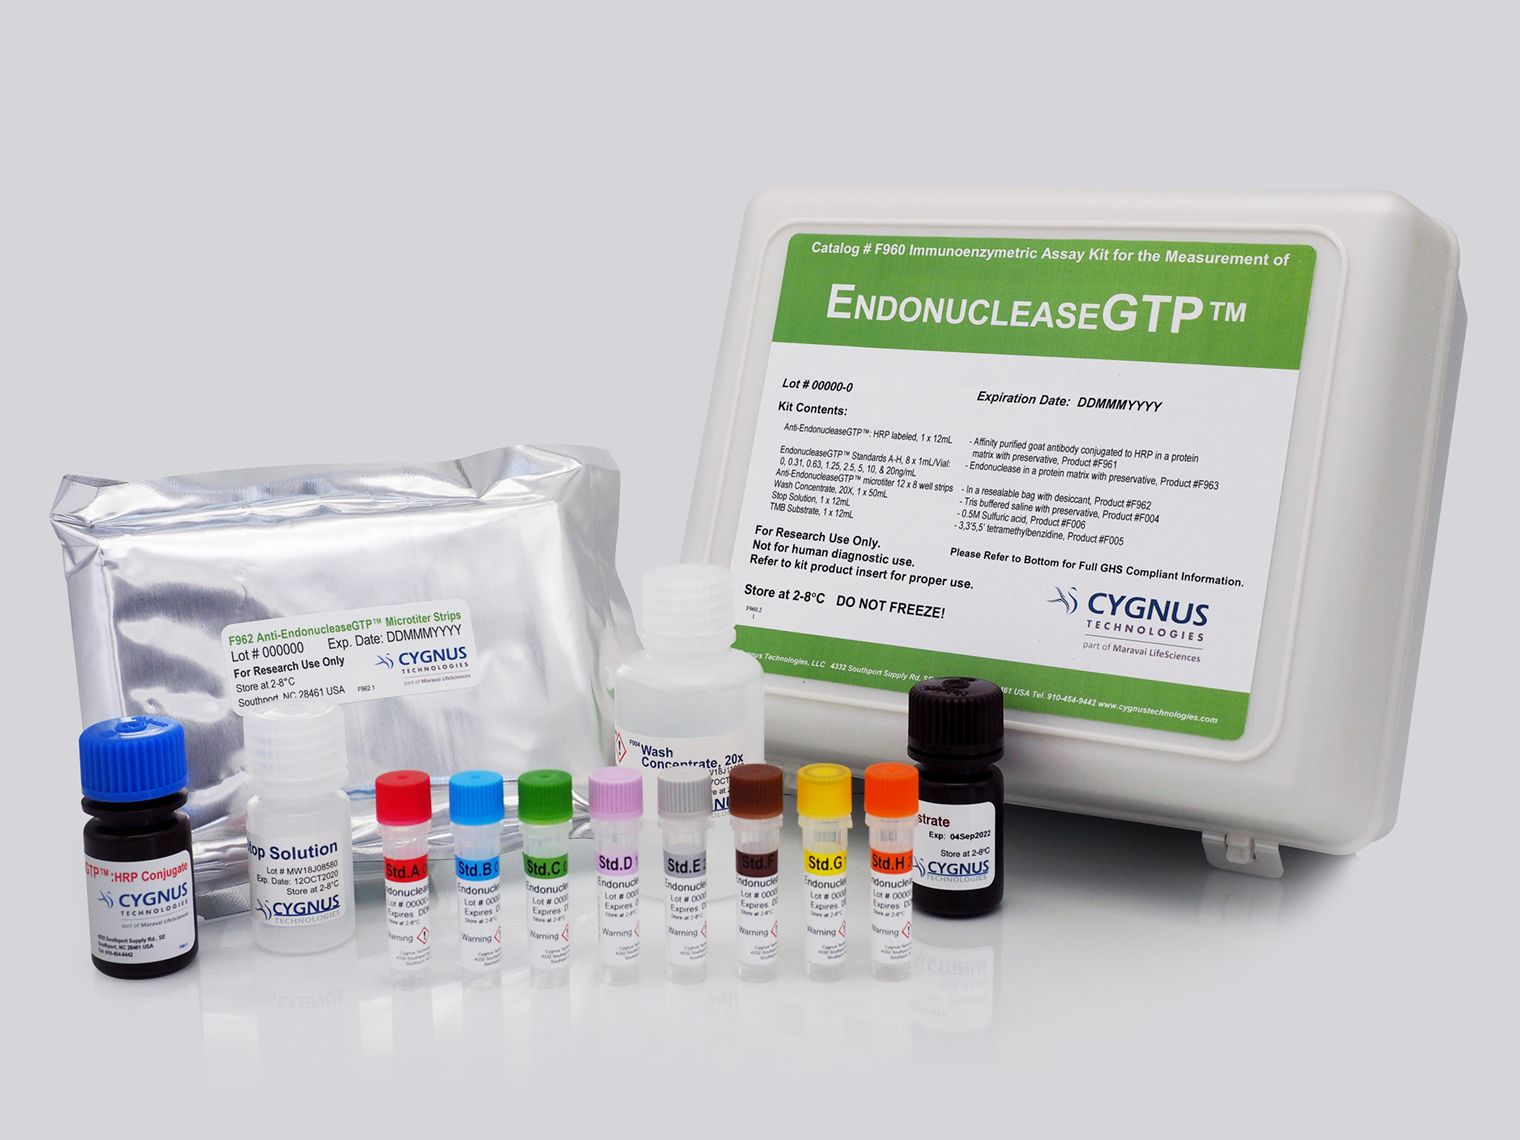 Cygnus生物制品残留检测又一利器 -EndonucleaseGTP核酸内切酶残留检测试剂盒